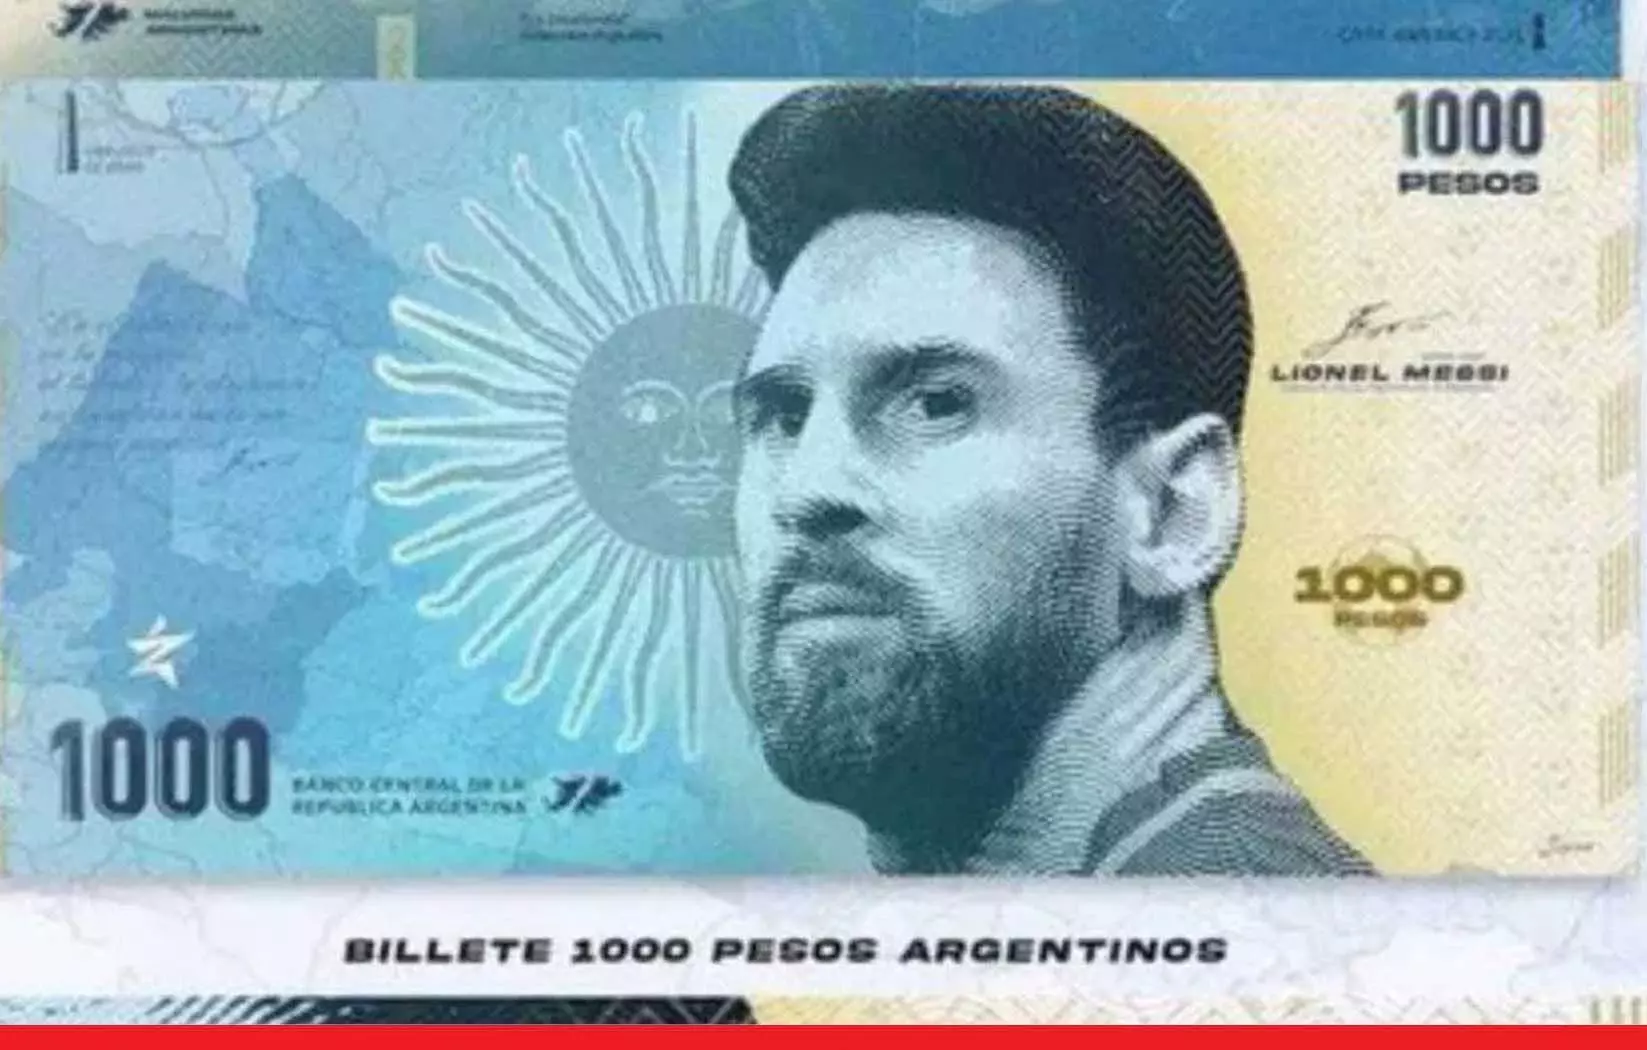 Lionel Messi: अर्जेंटीना के नोट पर होगी मेसी की तस्वीर, वर्ल्ड कप जीत के बाद सरकार का प्लान!